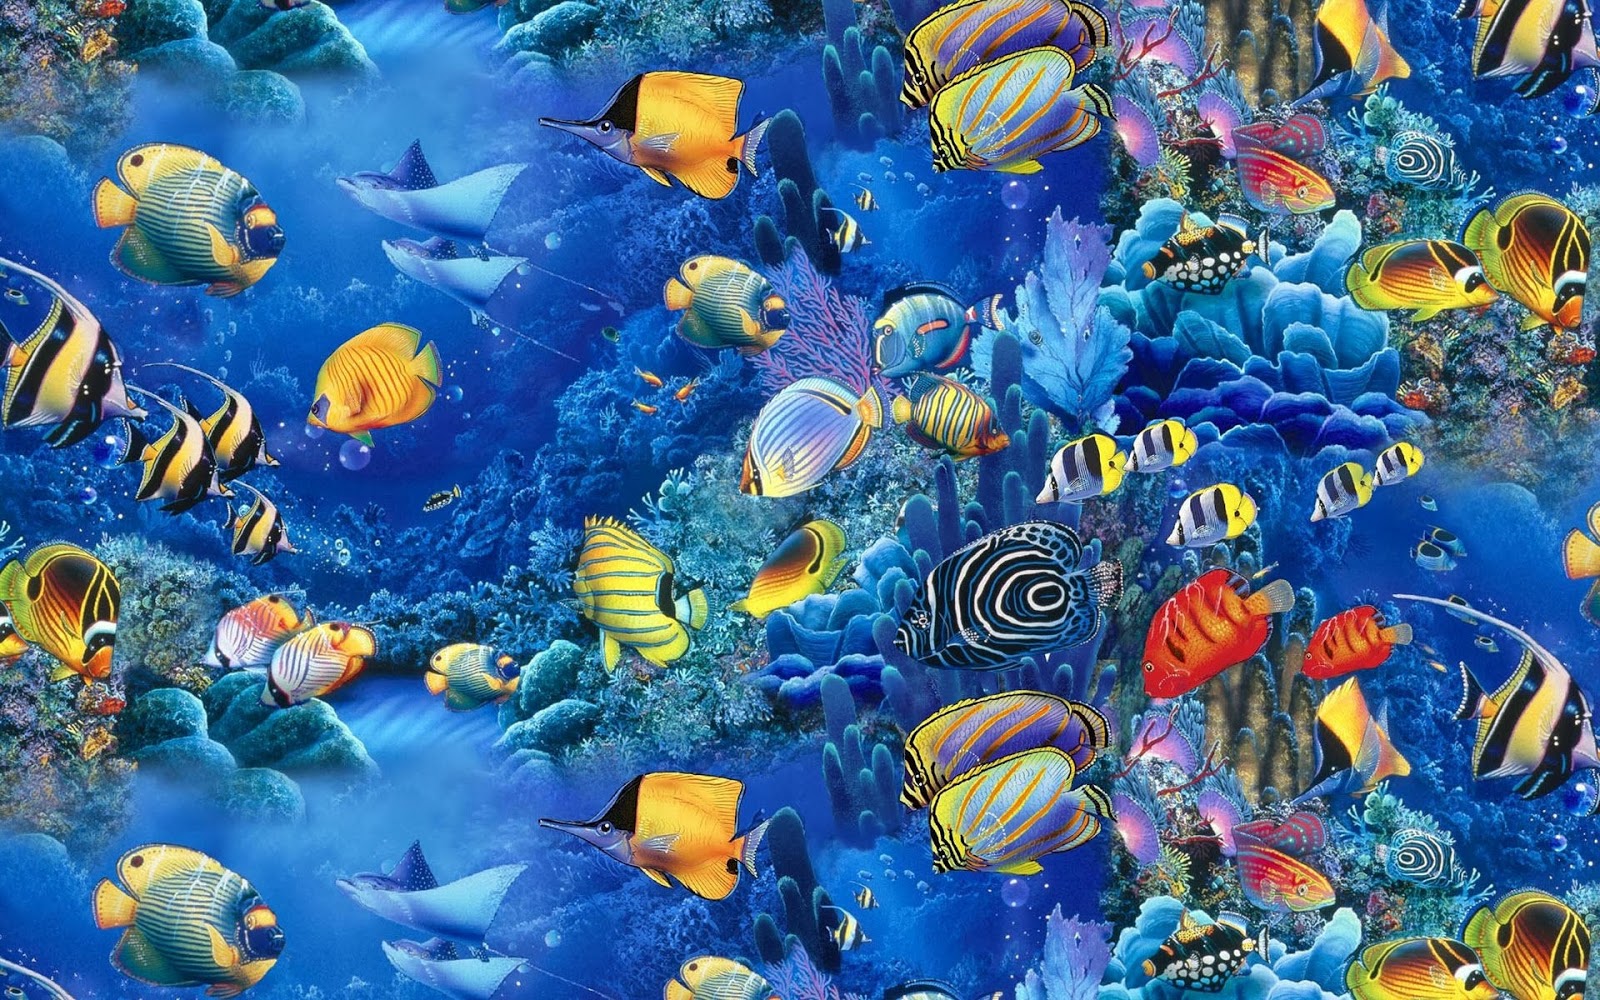 ingilizce壁紙,海洋生物学,水中,サンゴ礁の魚,水,青い